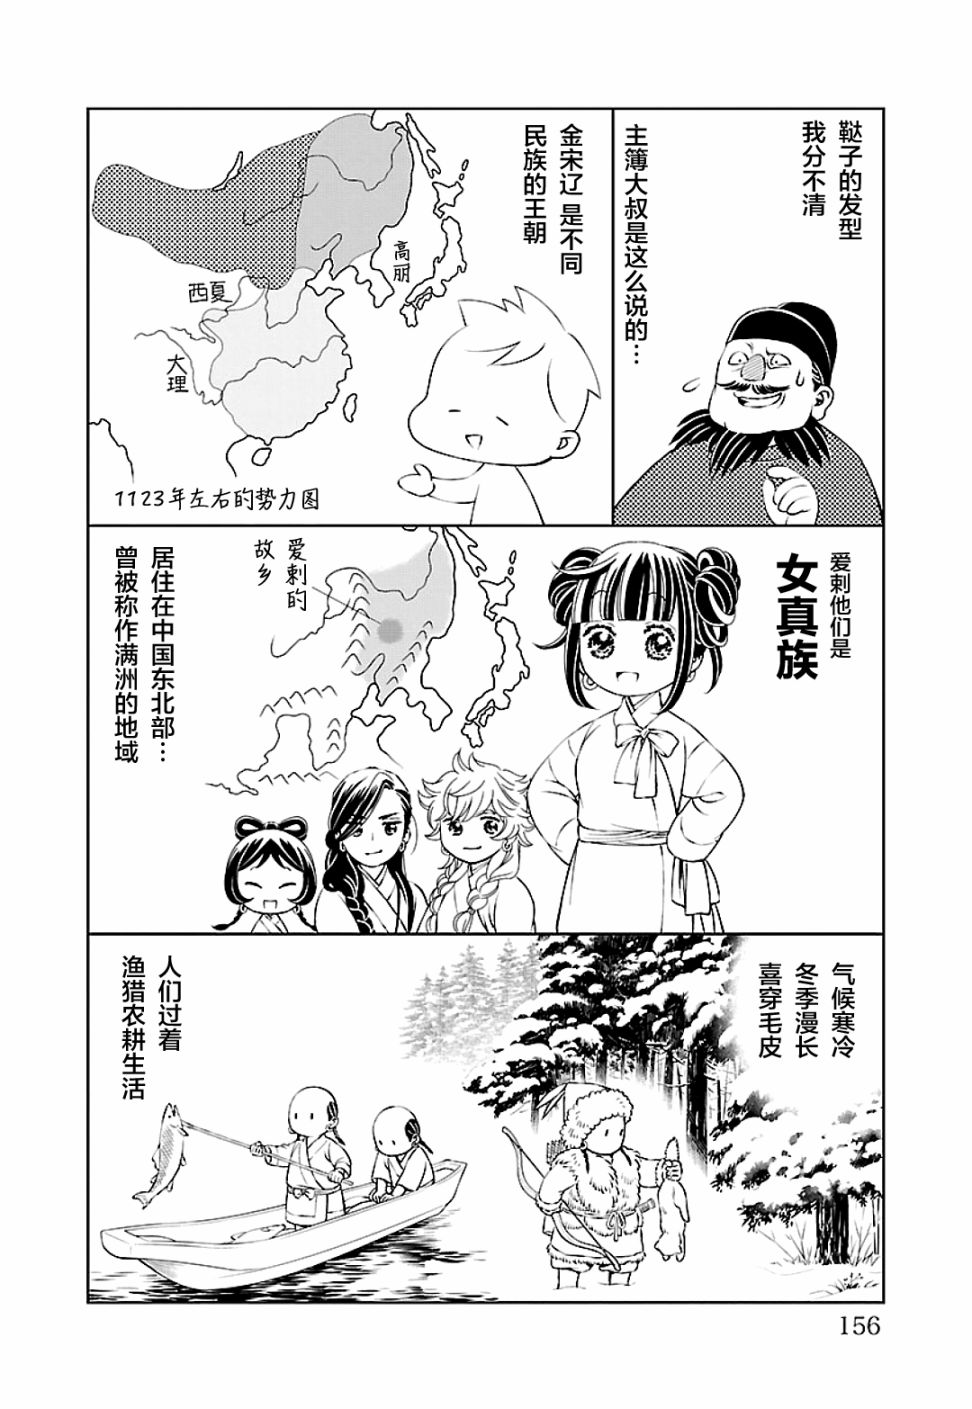 天上恋歌~金之公主与火之药师~漫画,第二卷后记1图